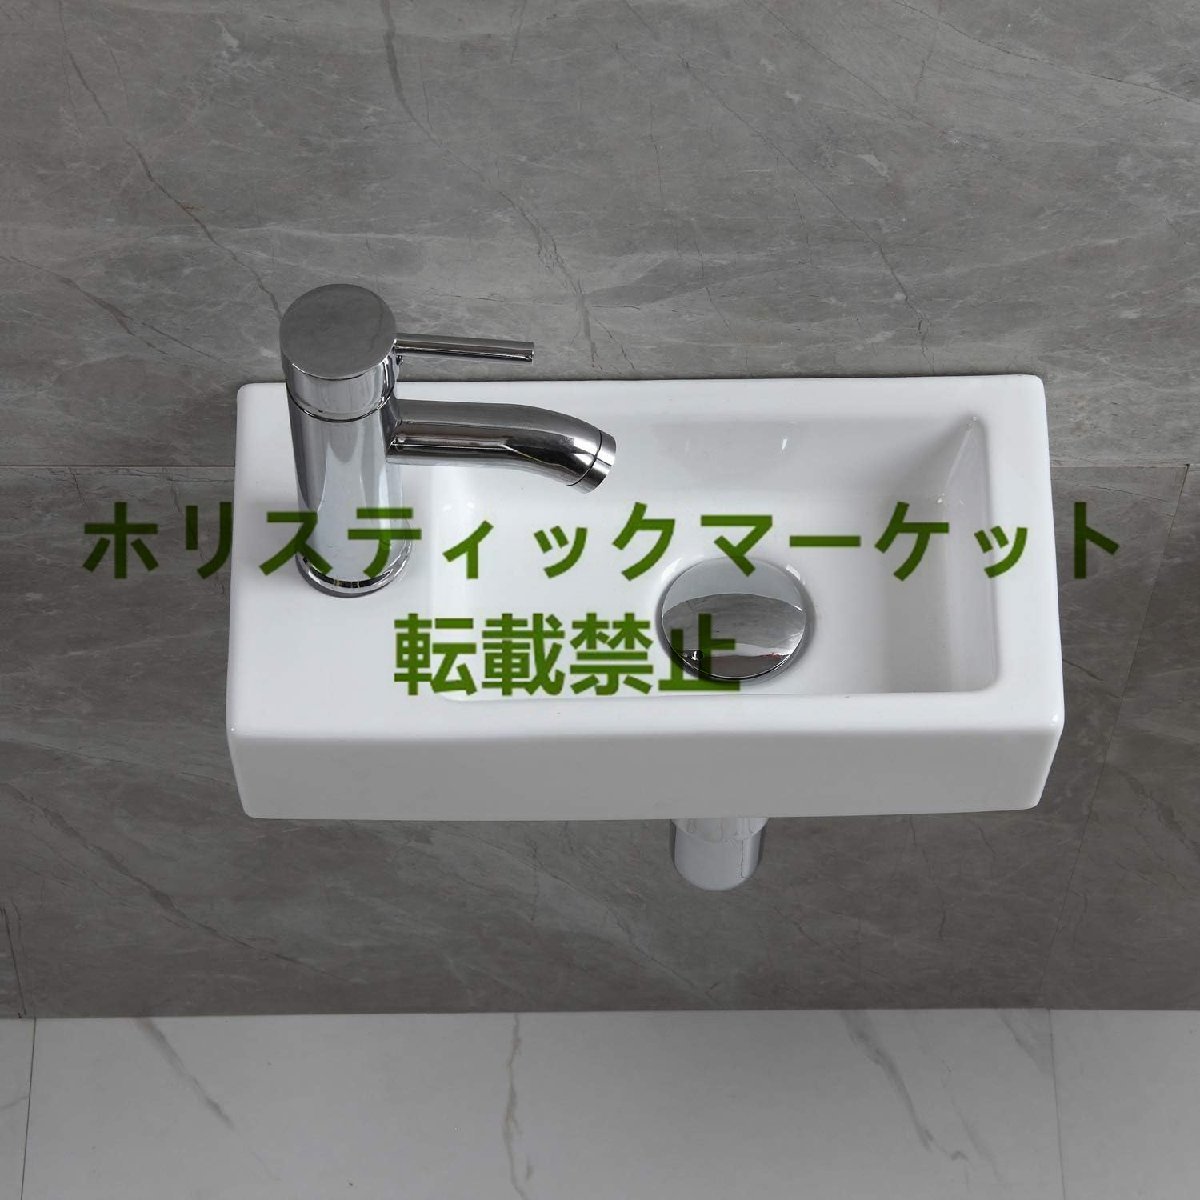 新品入荷 フェリモア 壁掛手洗器 小型手洗鉢 トイレ お手洗い リフォーム 改装 省スペース (ホワイト)の画像1